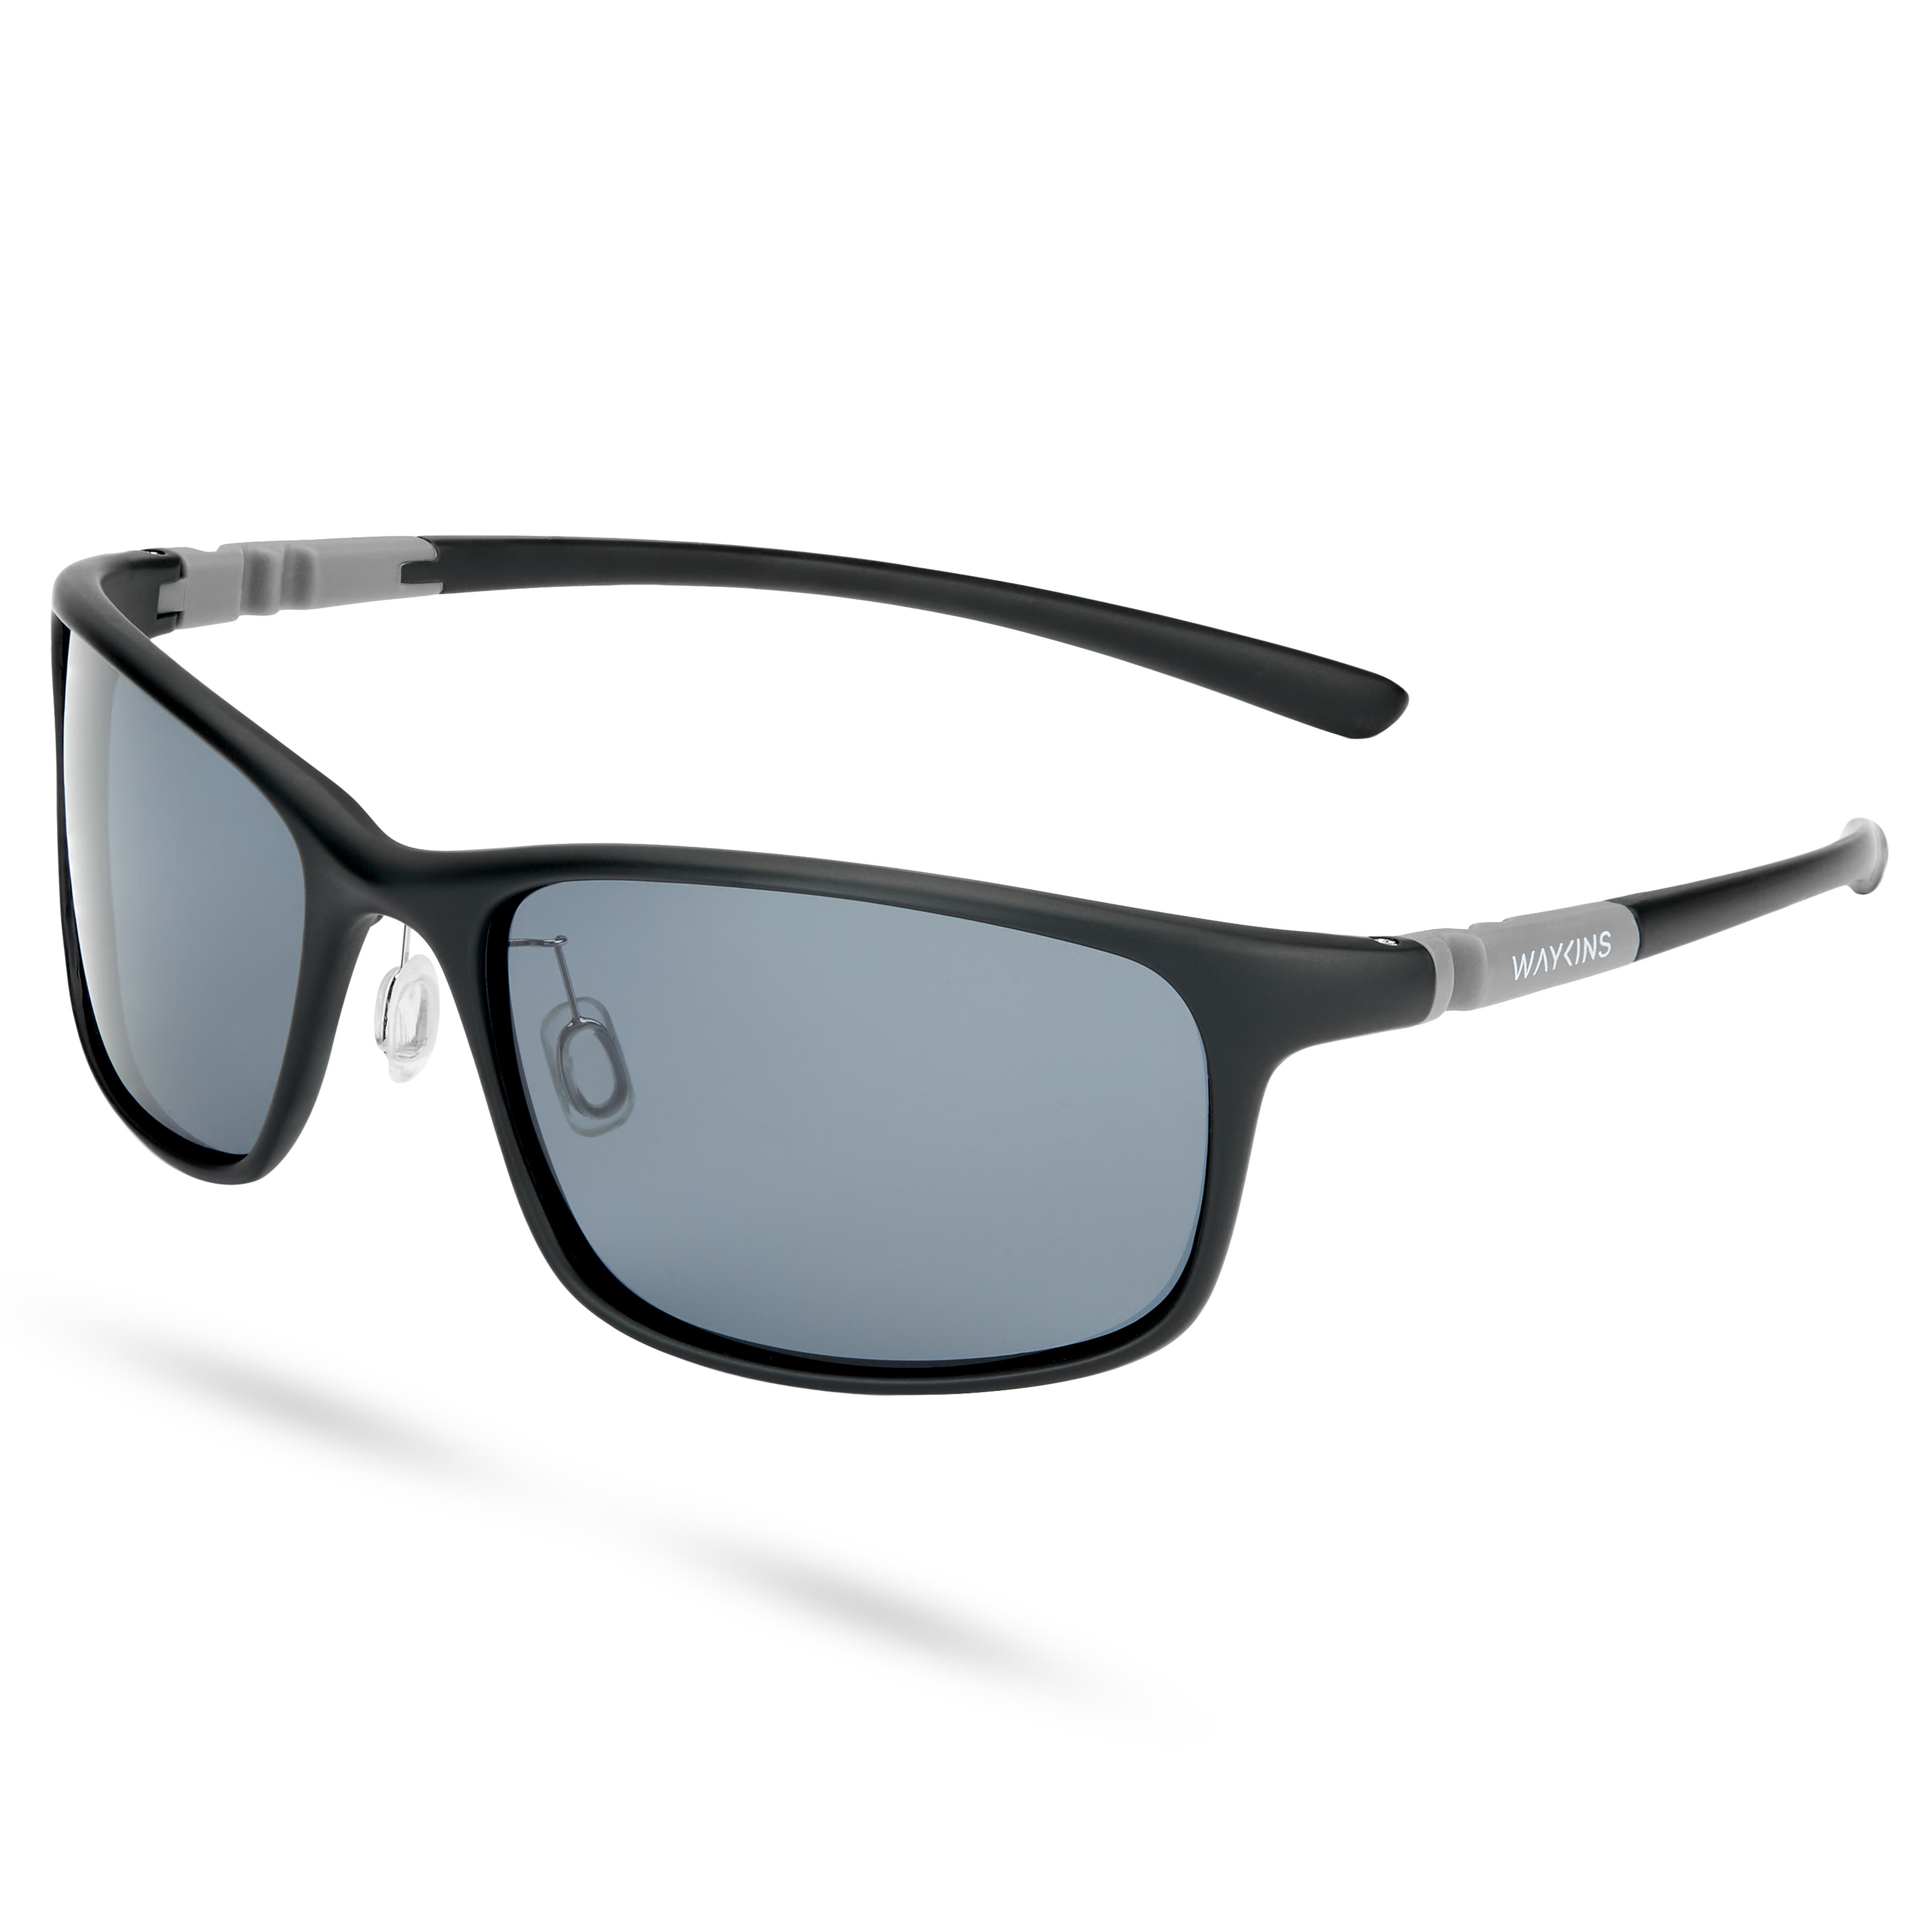 Ombra Sport prémium fekete napszemüveg